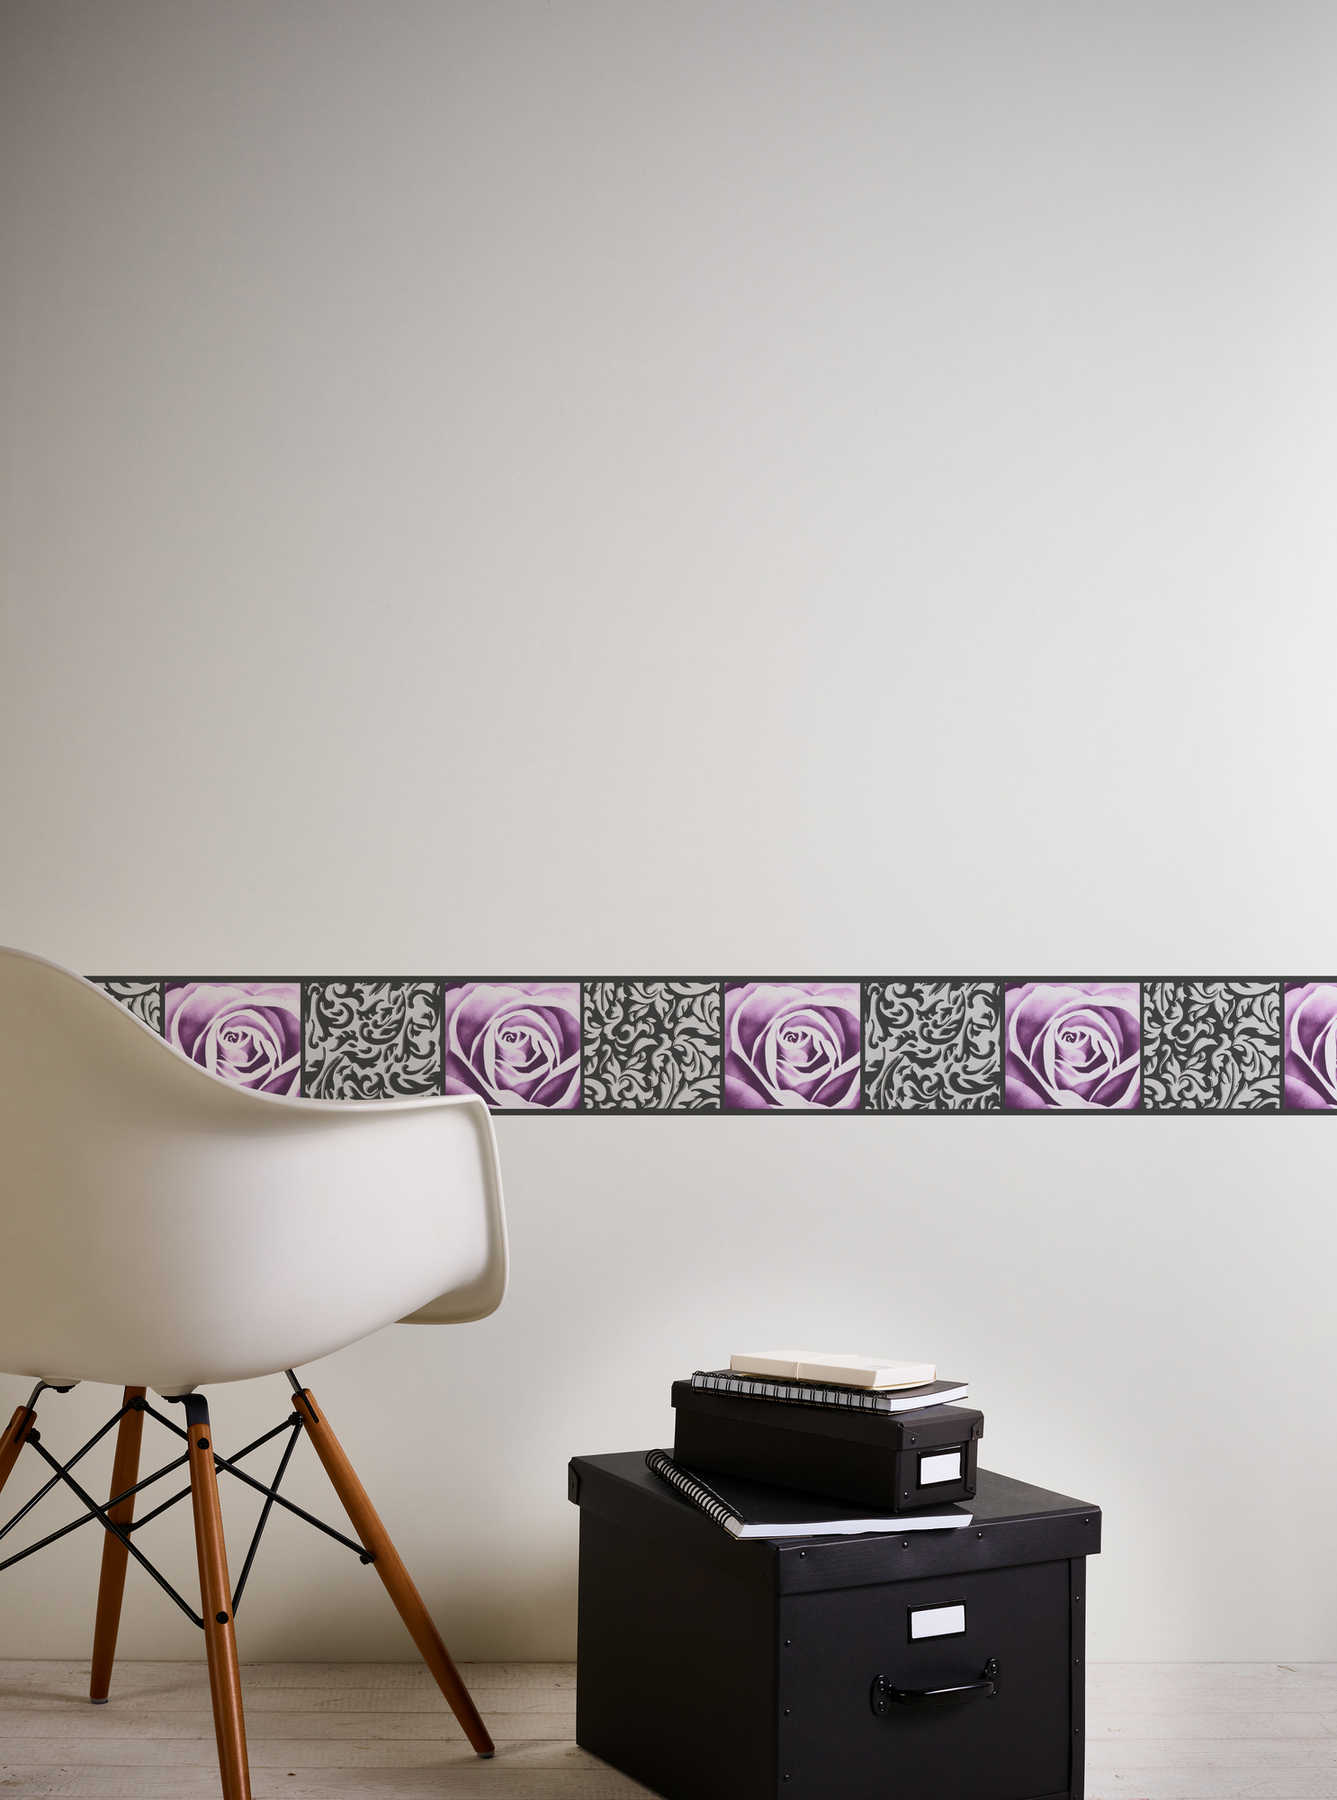             Bordure de papier peint avec roses & ornement design - noir, violet
        